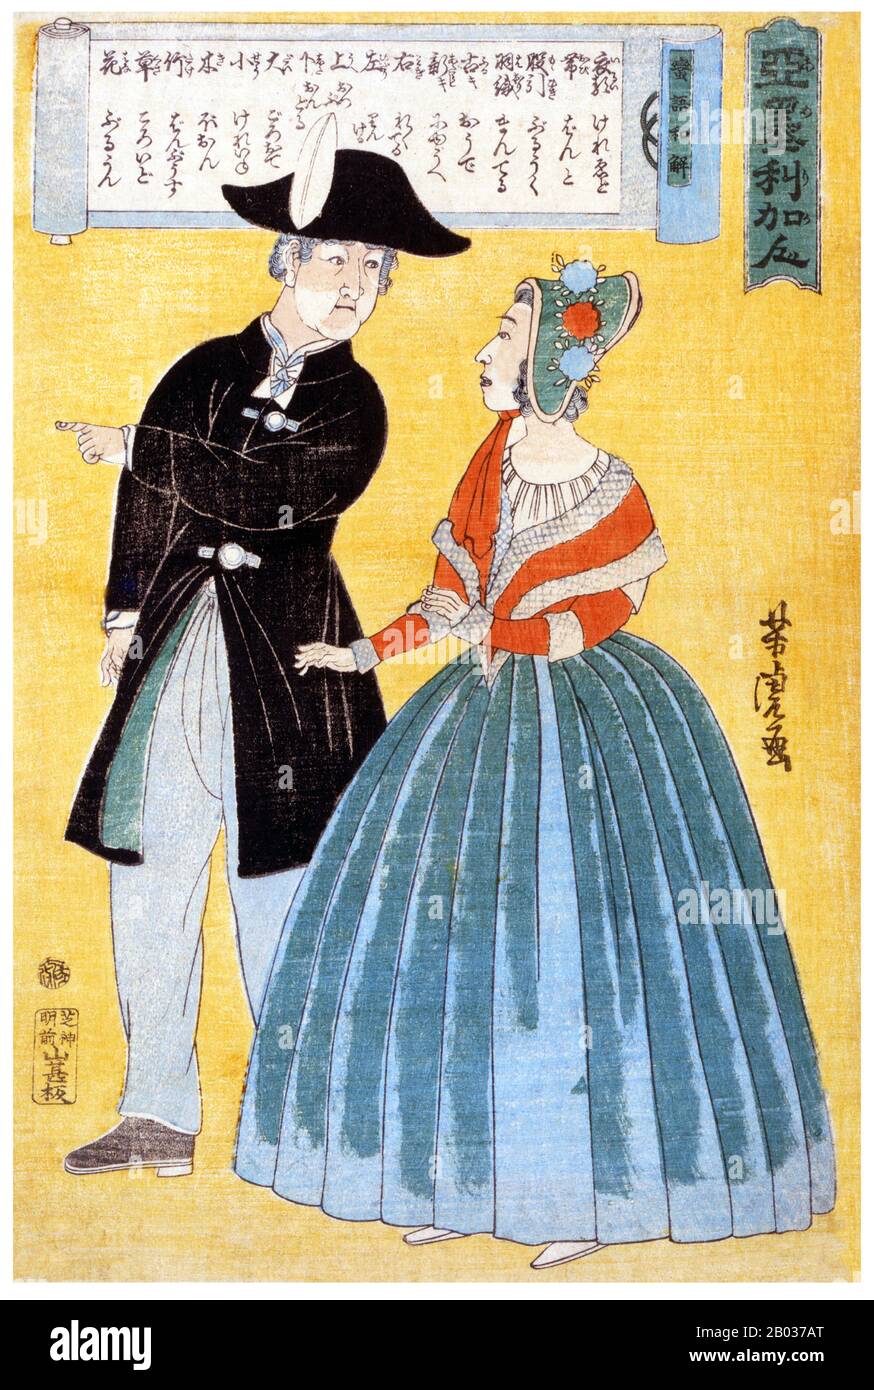 Imprimé boisés japonais montrant un couple américain convergeant; leur conversation est traduite en japonais. Utagawa Yoshitora était un concepteur de gravures japonaises sur bois ukiyo-e et un illustrateur de livres et de journaux qui était actif d'environ 1850 à environ 1880. Il est né à Edo (Tokyo moderne), mais ni sa date de naissance ni sa date de mort ne sont connues. Il a été le plus ancien élève d'Utagawa Kuniyoshi qui a excellé dans des reproductions de guerriers, d'acteurs kabuki, de belles femmes et d'étrangers (Yokohama-e). Banque D'Images